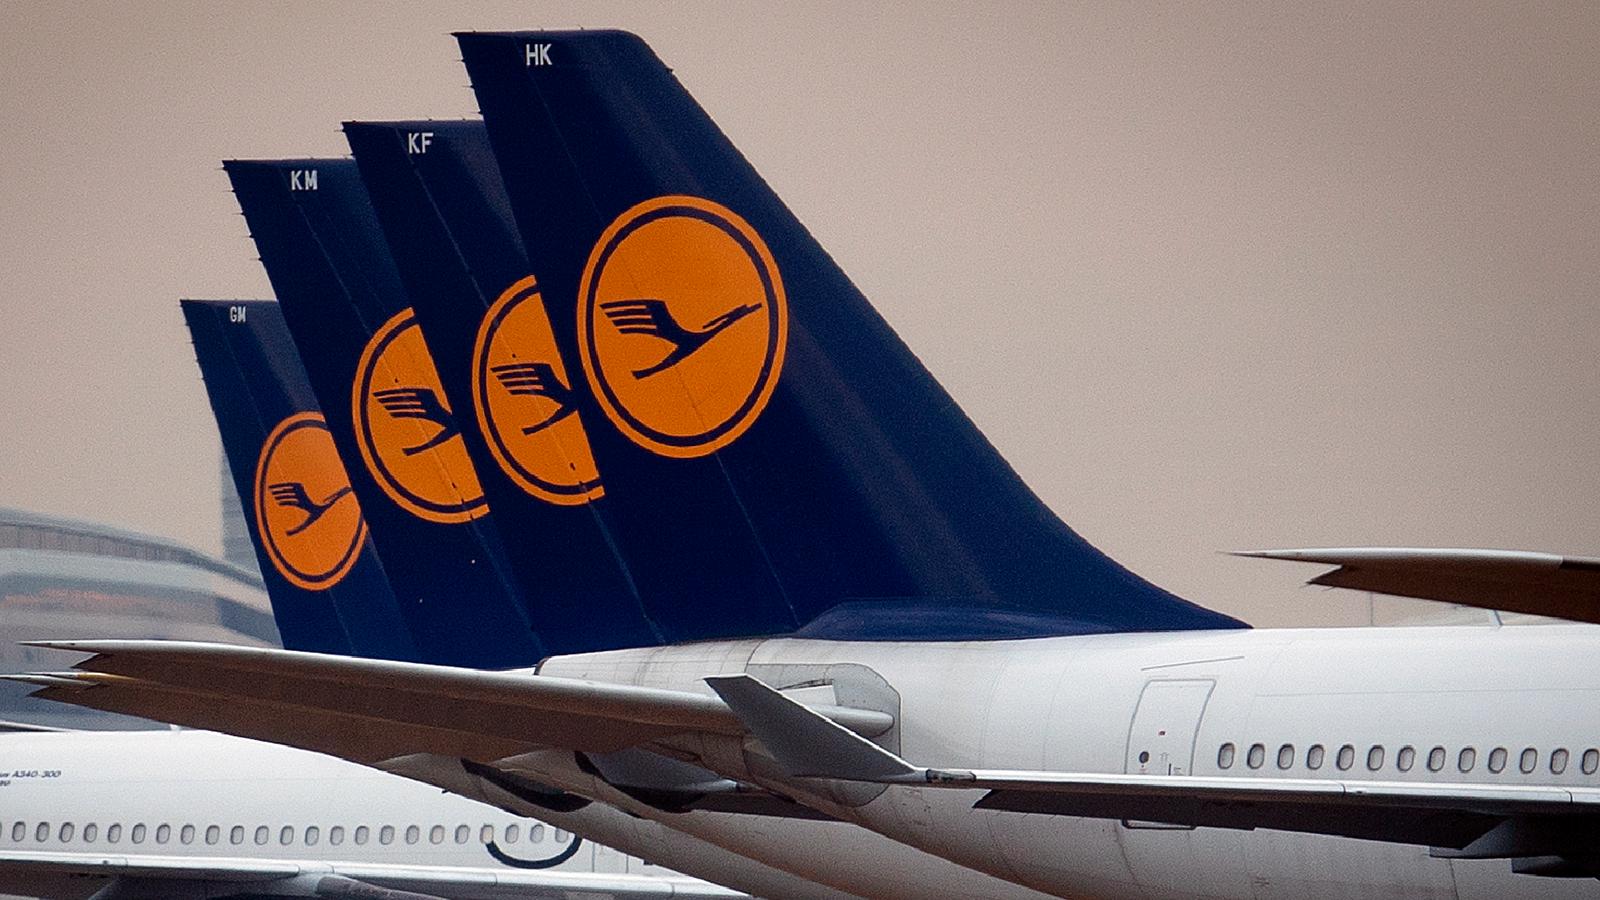 Enligt tyska flygbolaget Lufthansas har alla rätt att bestämma om de vill vara med på en bild som publiceras någonstans, ”vilket givetvis också gäller våra besättningsmedlemmar”.